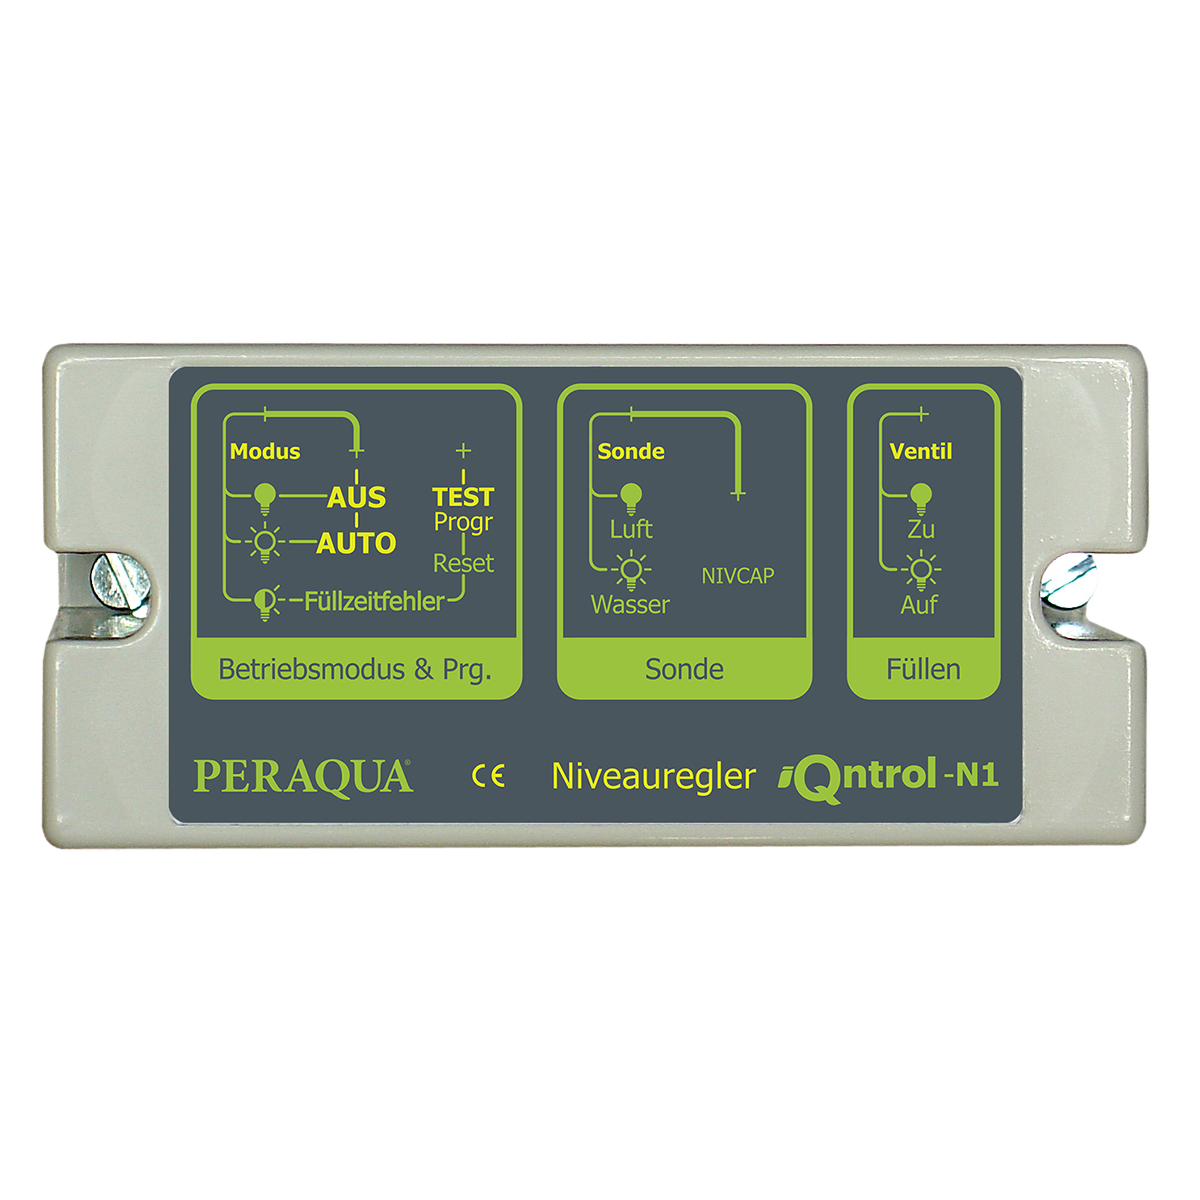 PERAQUA iQntrol-N1 7300921 Металлоконструкции